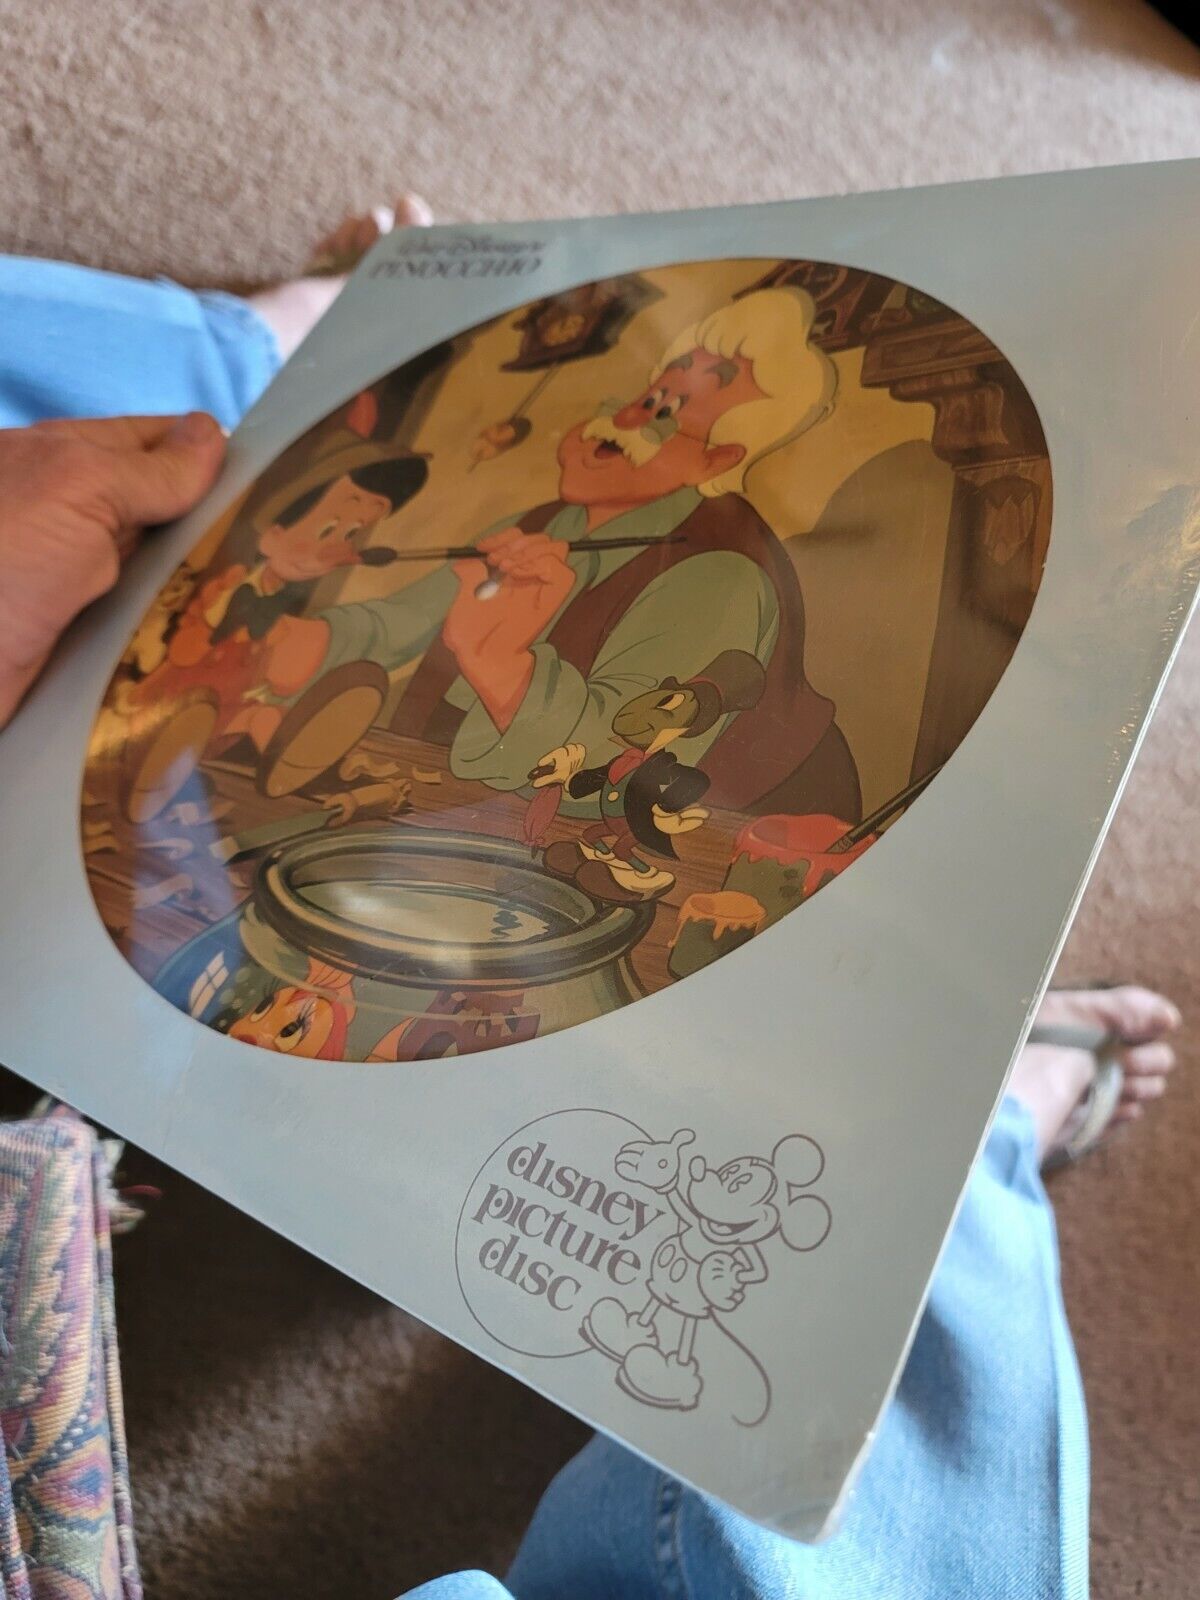 1980 Walt Disney's Pinocchio Picture Disc Lp Vinyl Album Record LAST ONE EVER??